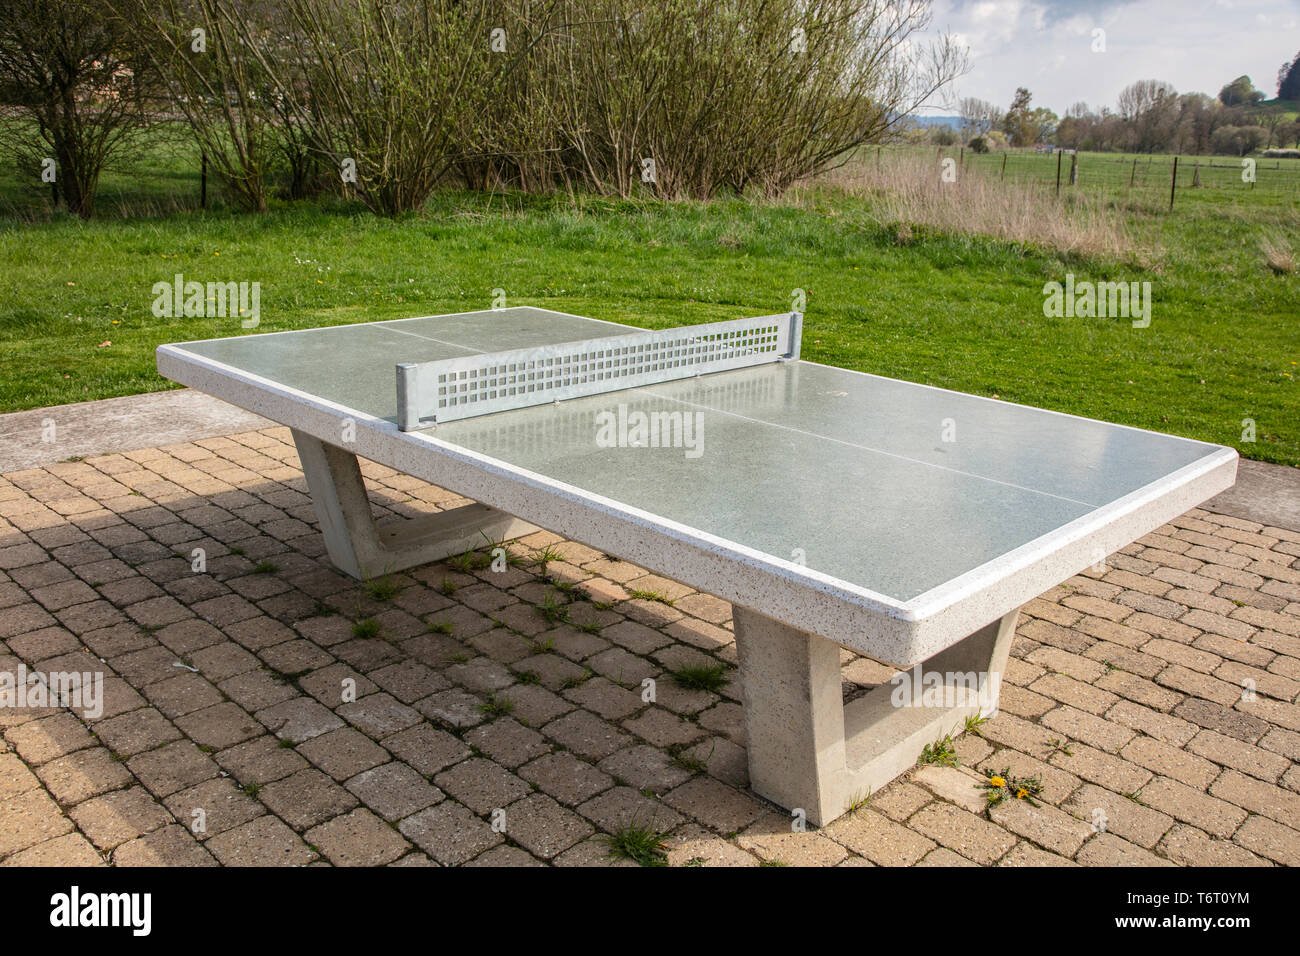 Une table de ping-pong se trouve dans un parc public Photo Stock - Alamy